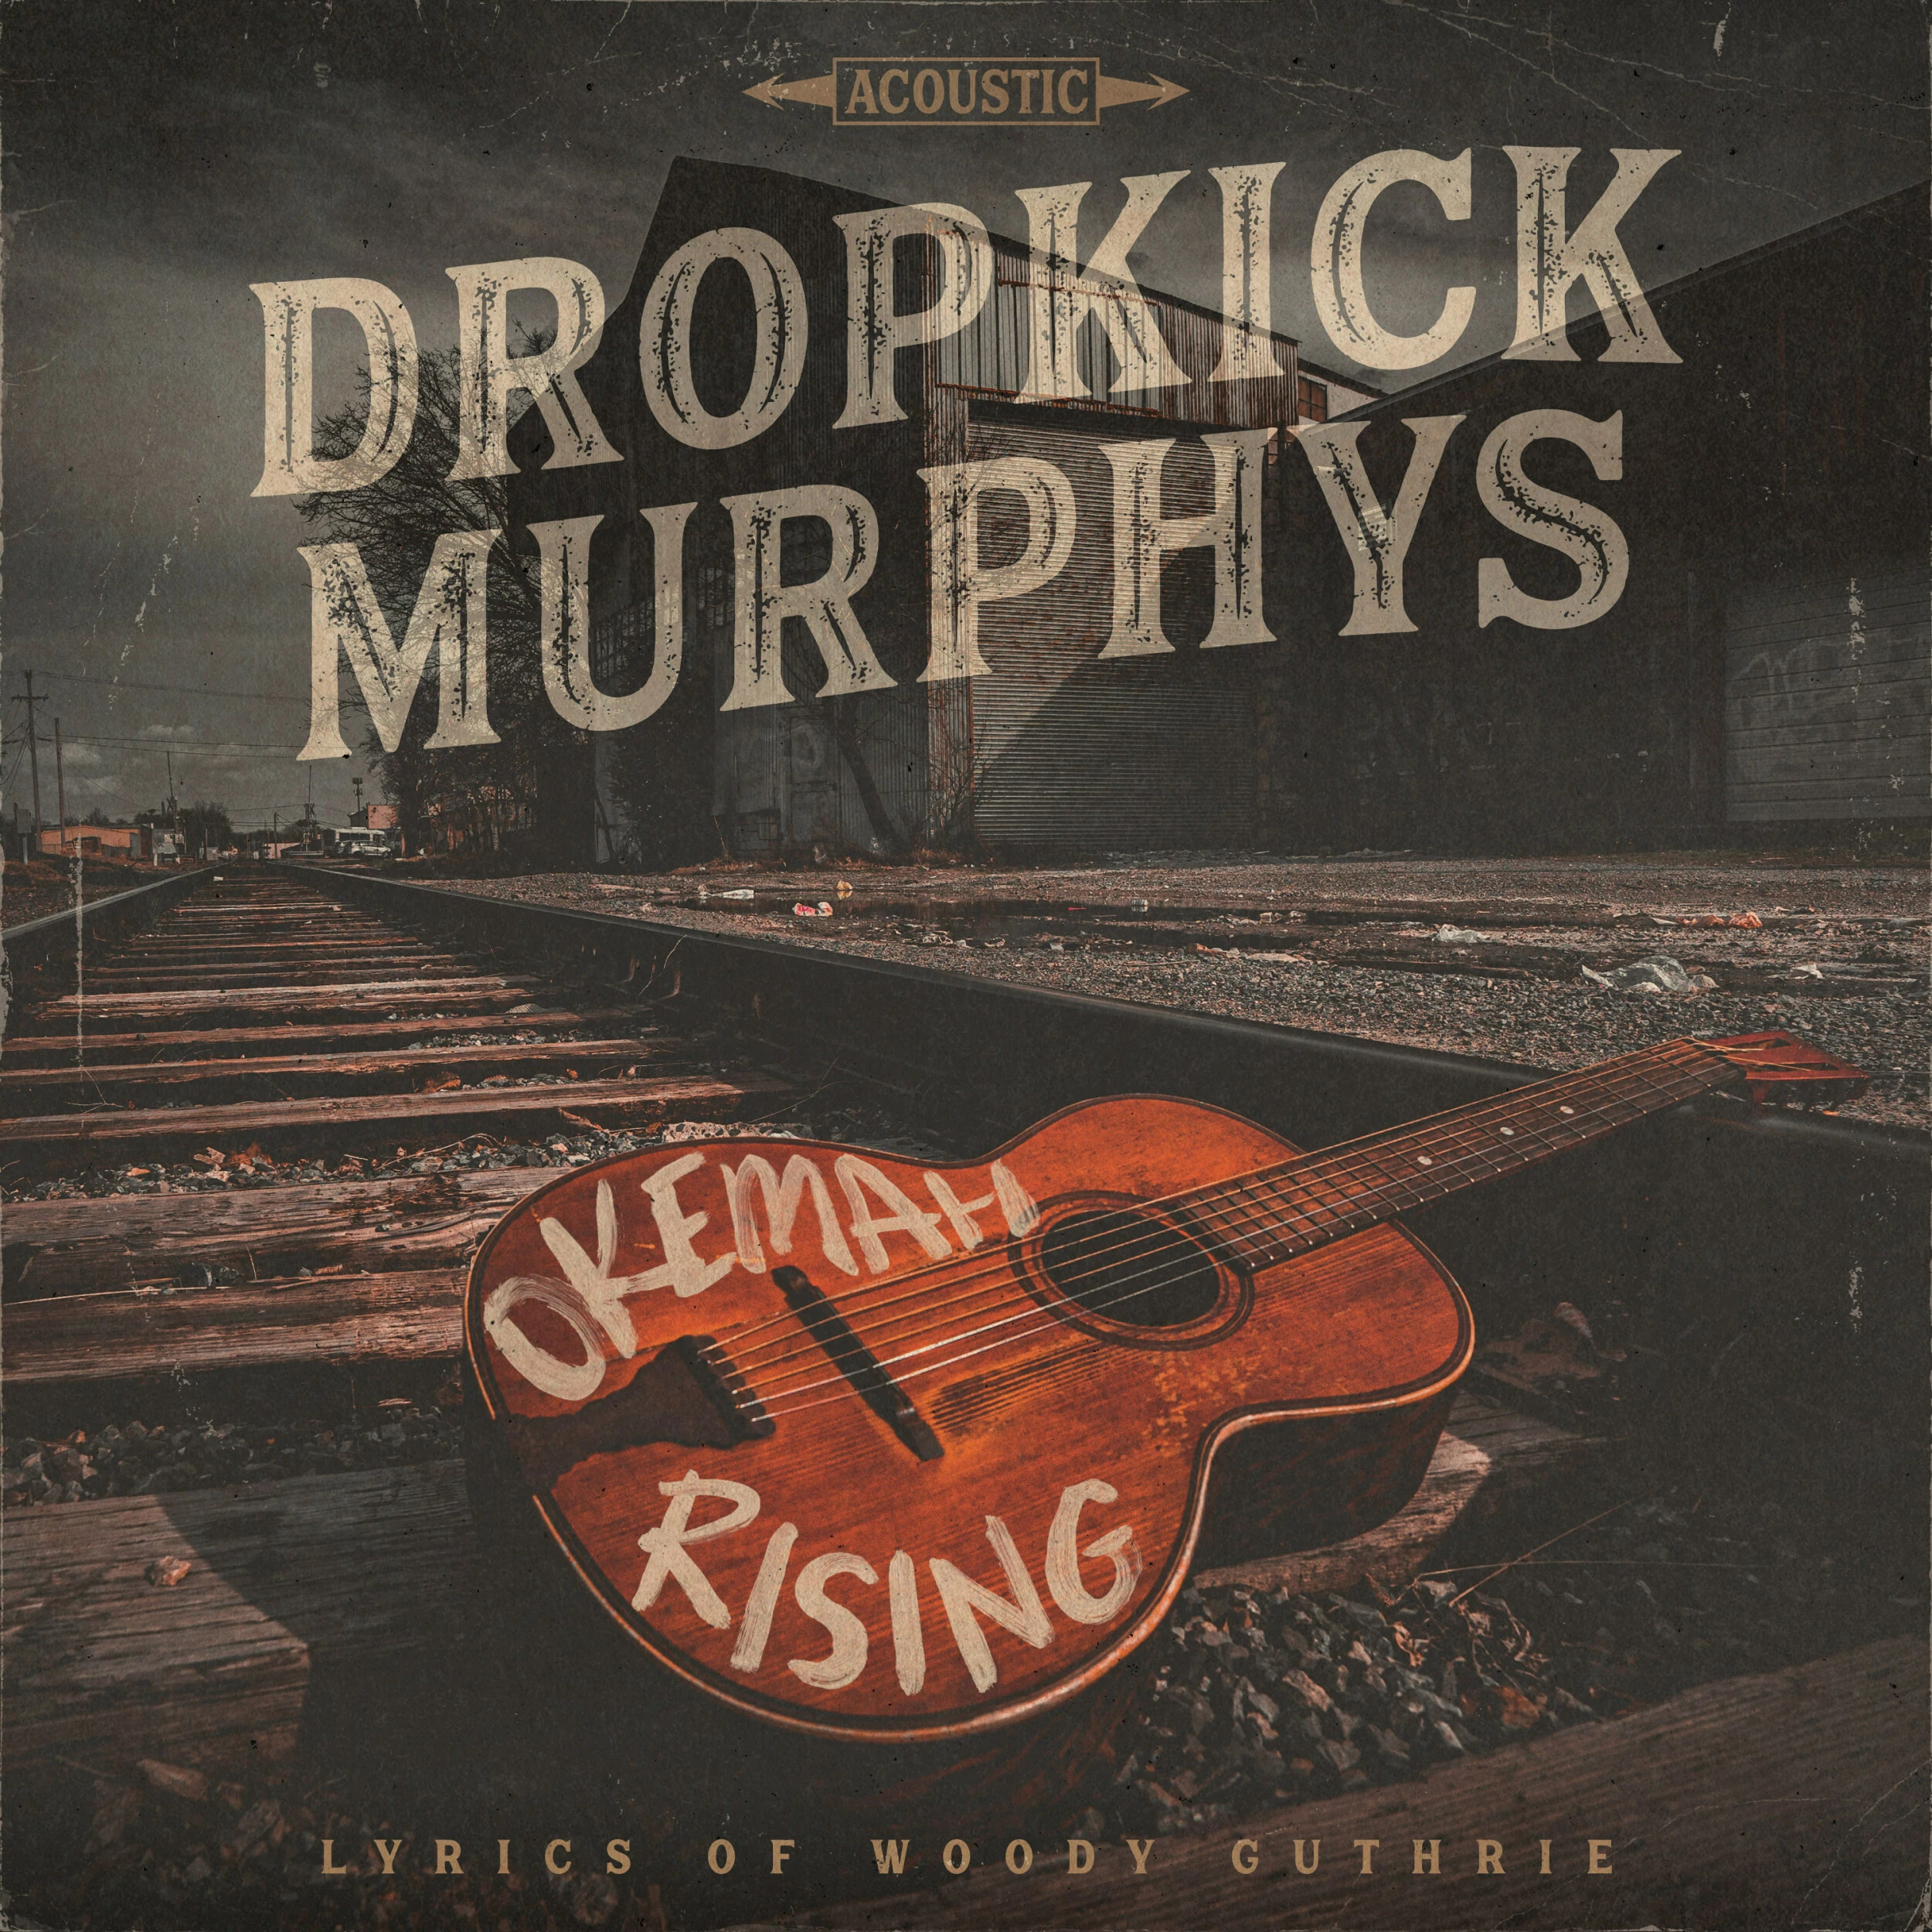 DROPKICK MURPHYS - Okemah Rising [DIGIPACK CD]